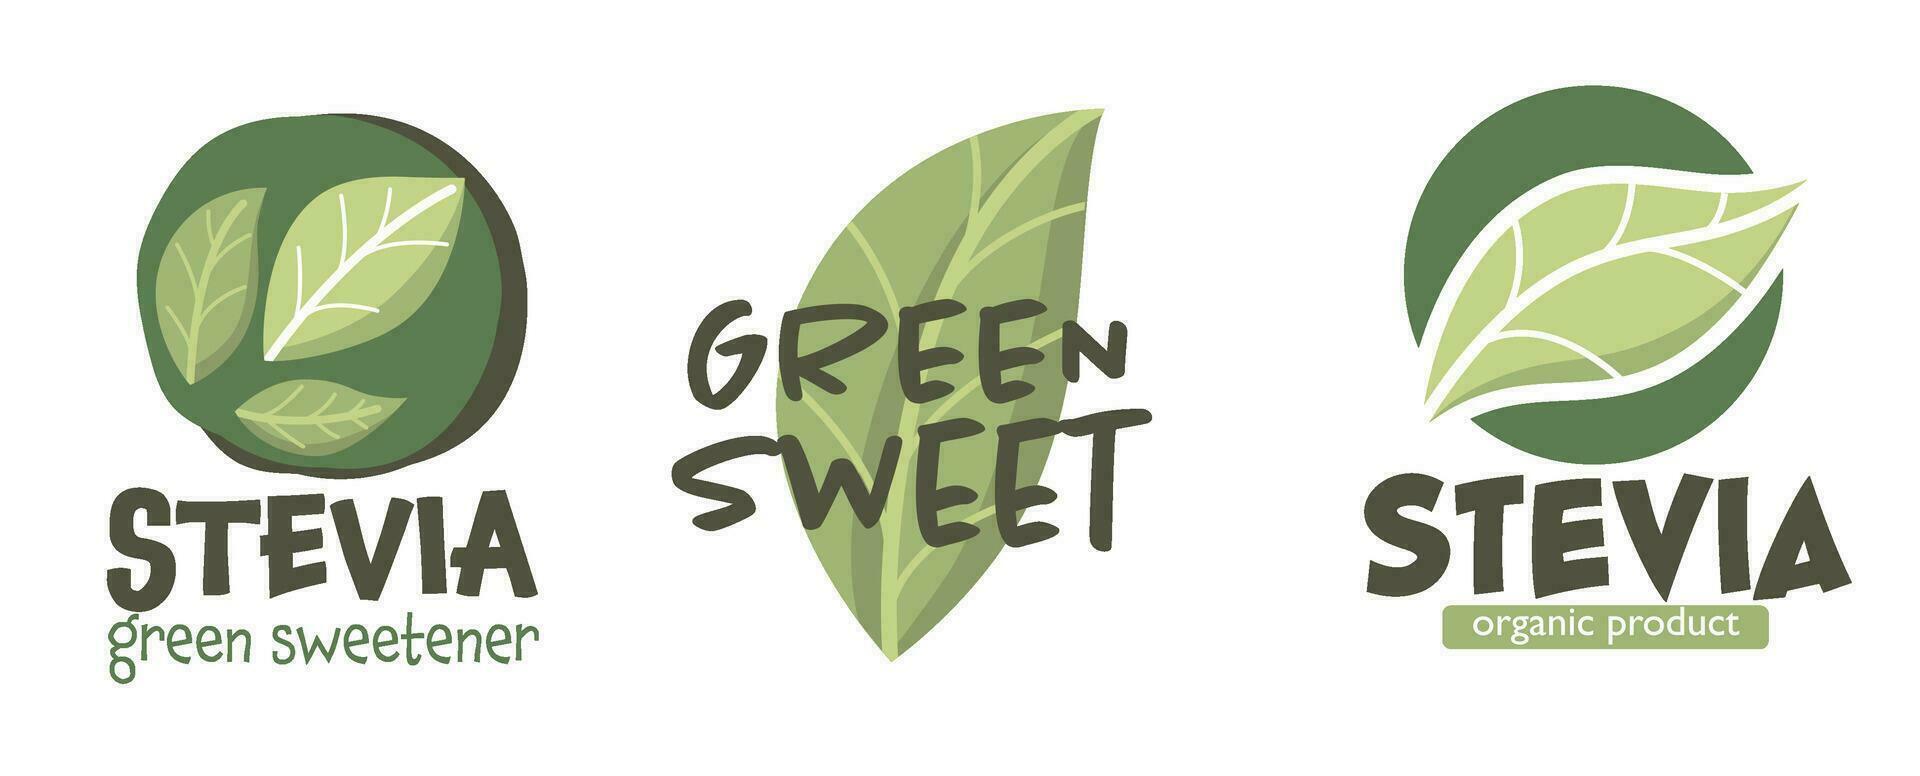 stevia verde edulcorante orgánico productos vector